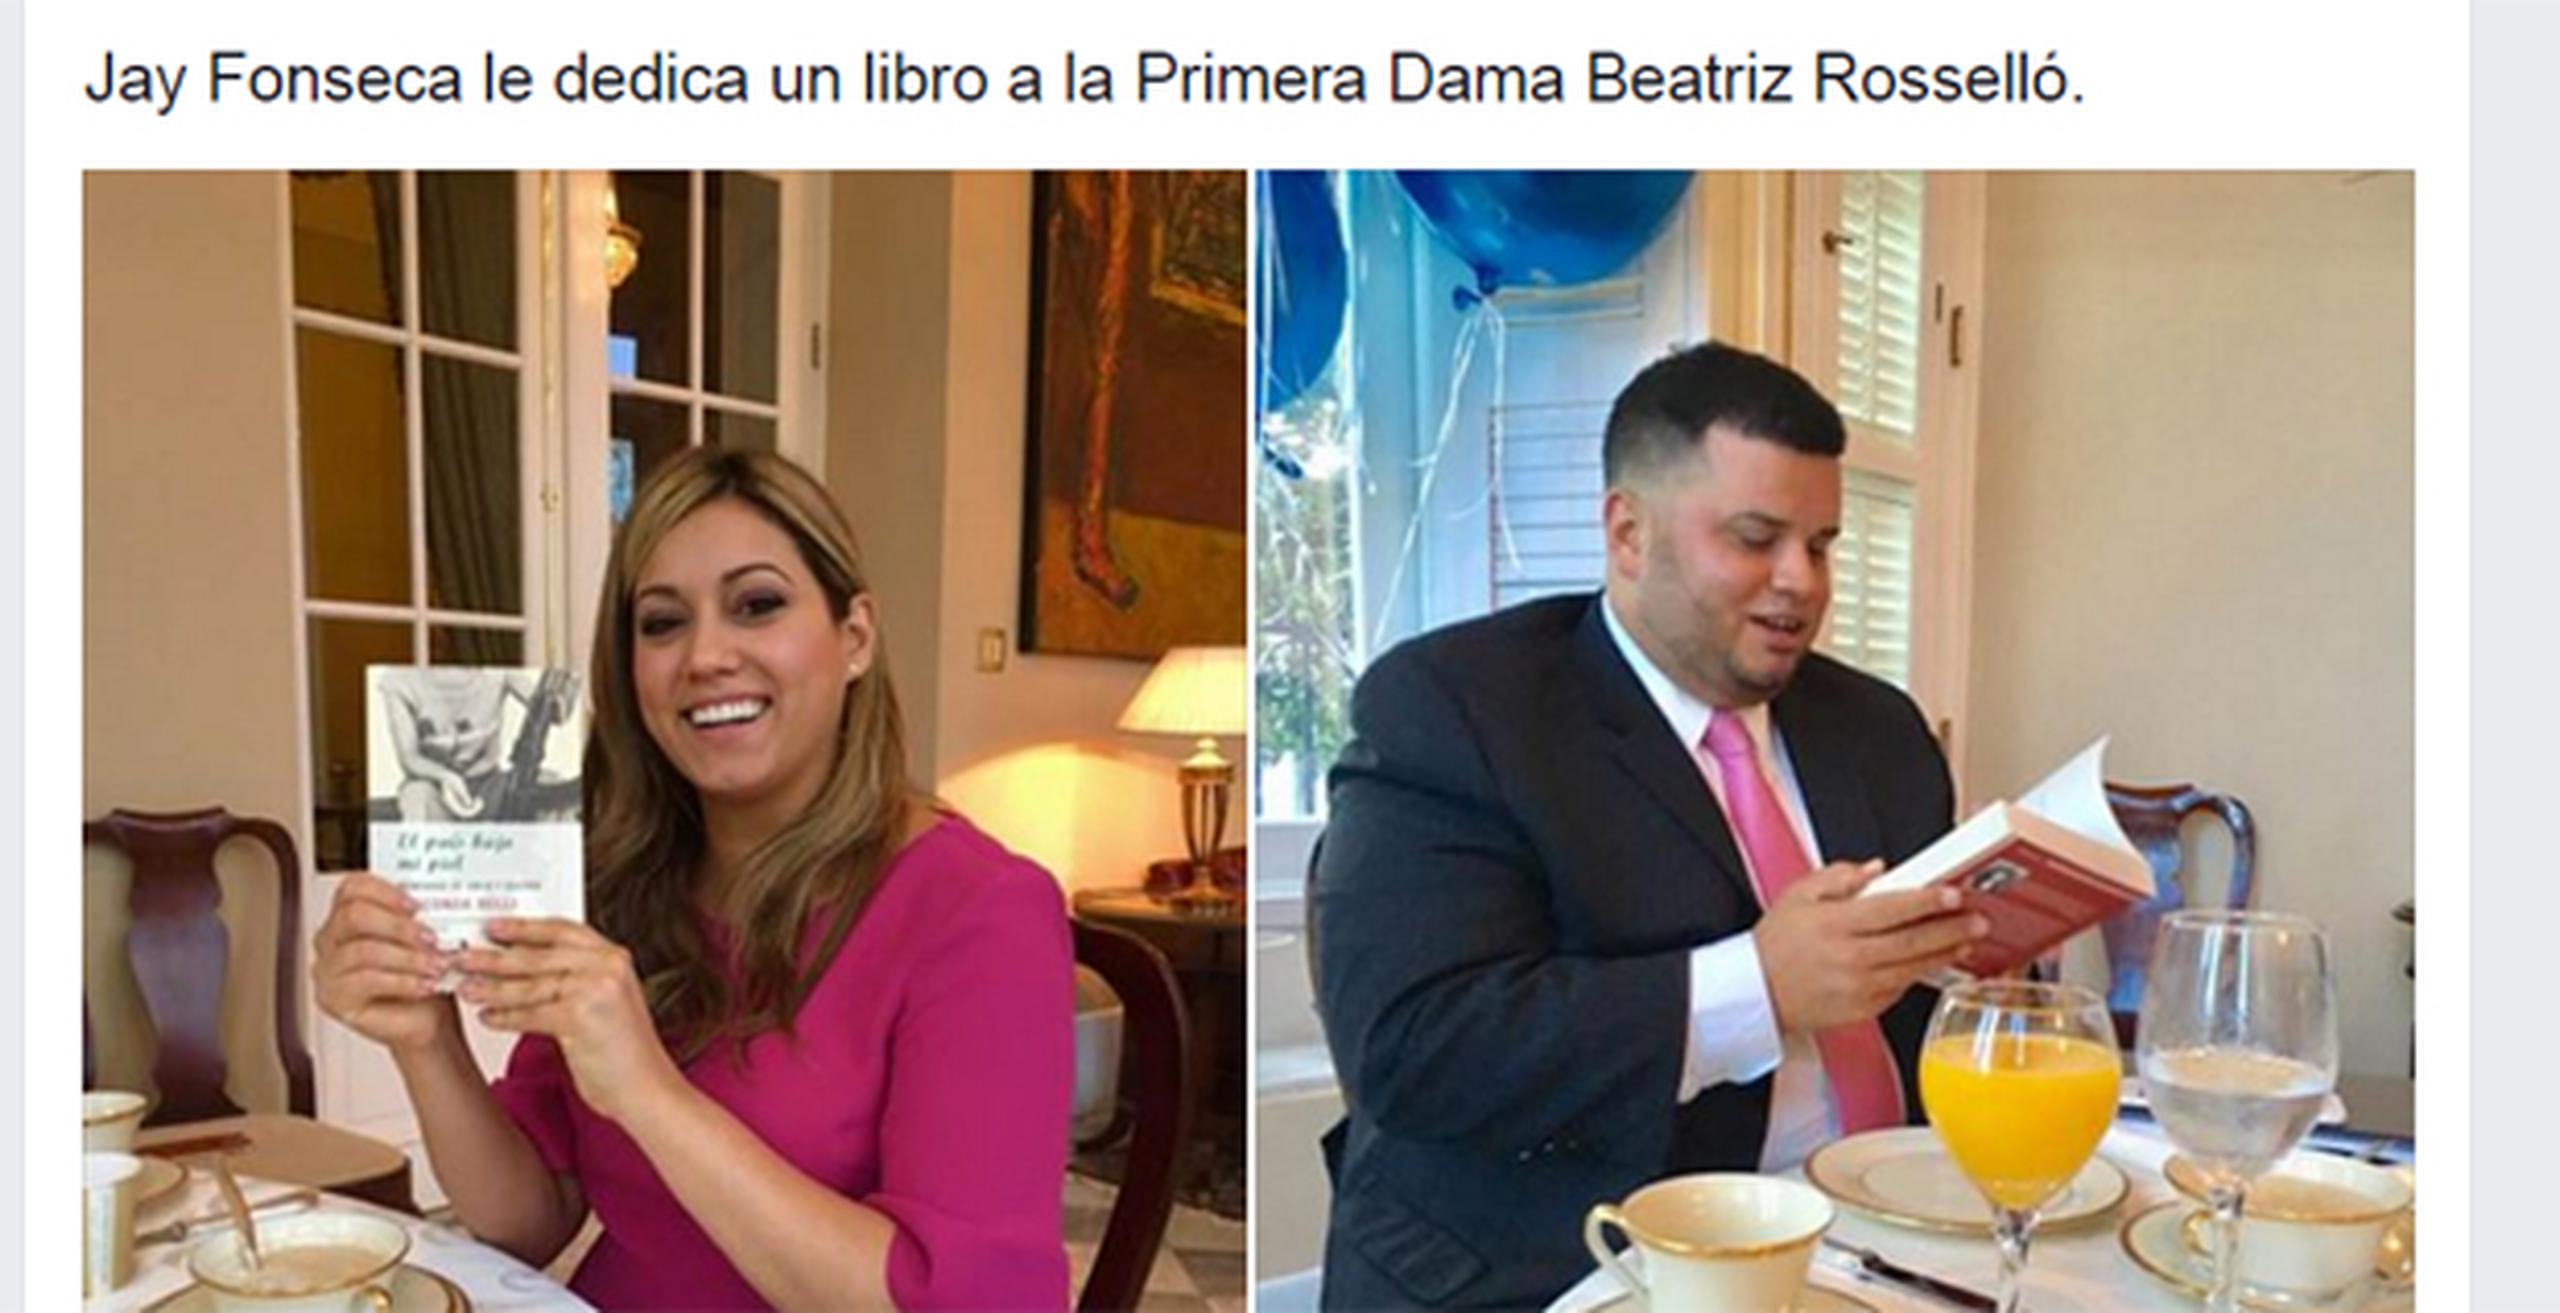 Fonseca indicó en el vídeo que lo que sucedió fue que la reunión coincidió con su cumpleaños.